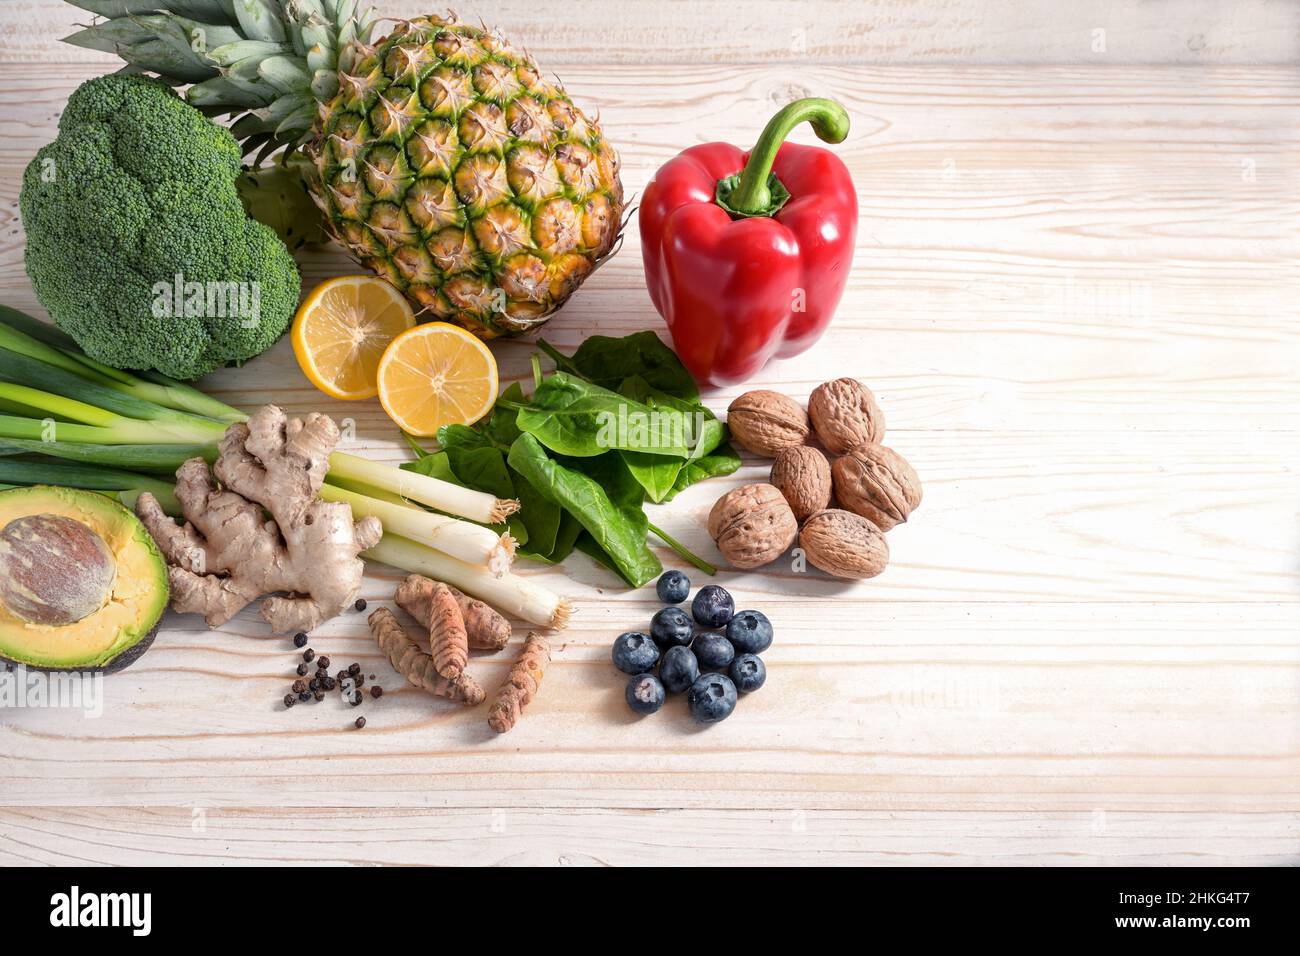 Cibo vegetariano con effetto antinfiammatorio e antiossidante, disposizione di verdure, noci, frutta e spezie su un fondo di legno chiaro con co Foto Stock